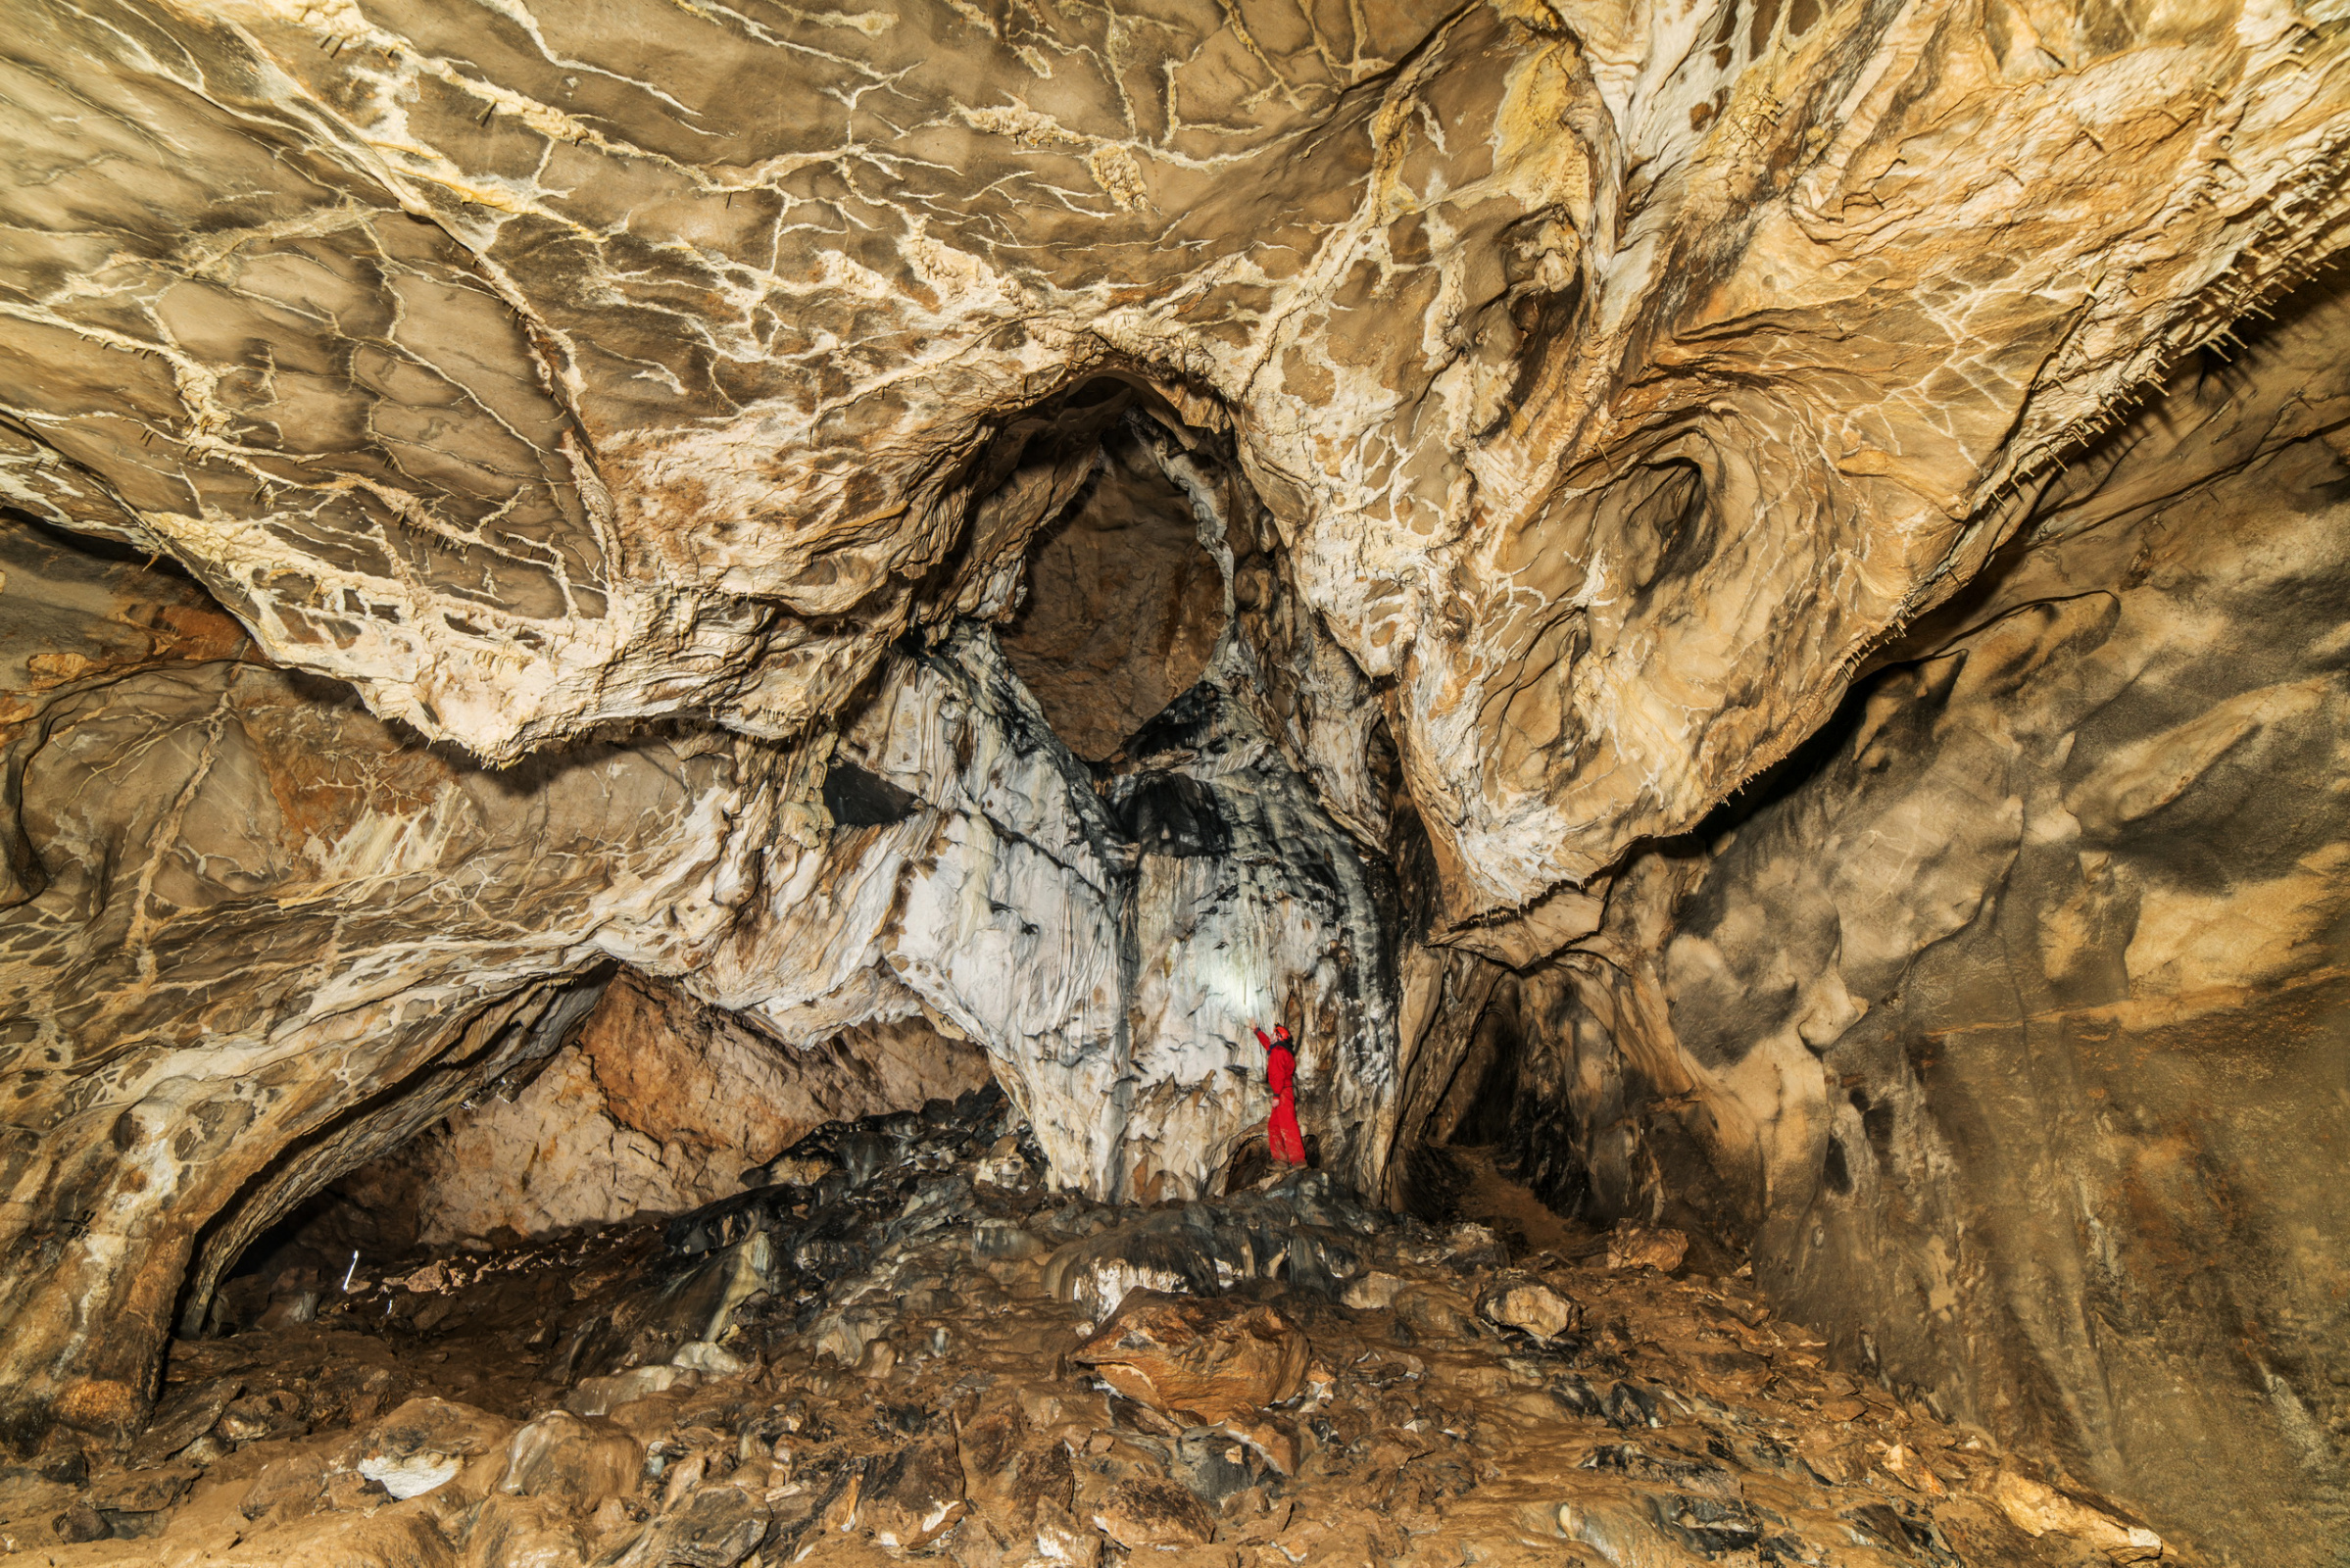 Пещера, заповедник Шульган-Таш. Фото: Сергей Пешков, участник фотоконкурса РГО 